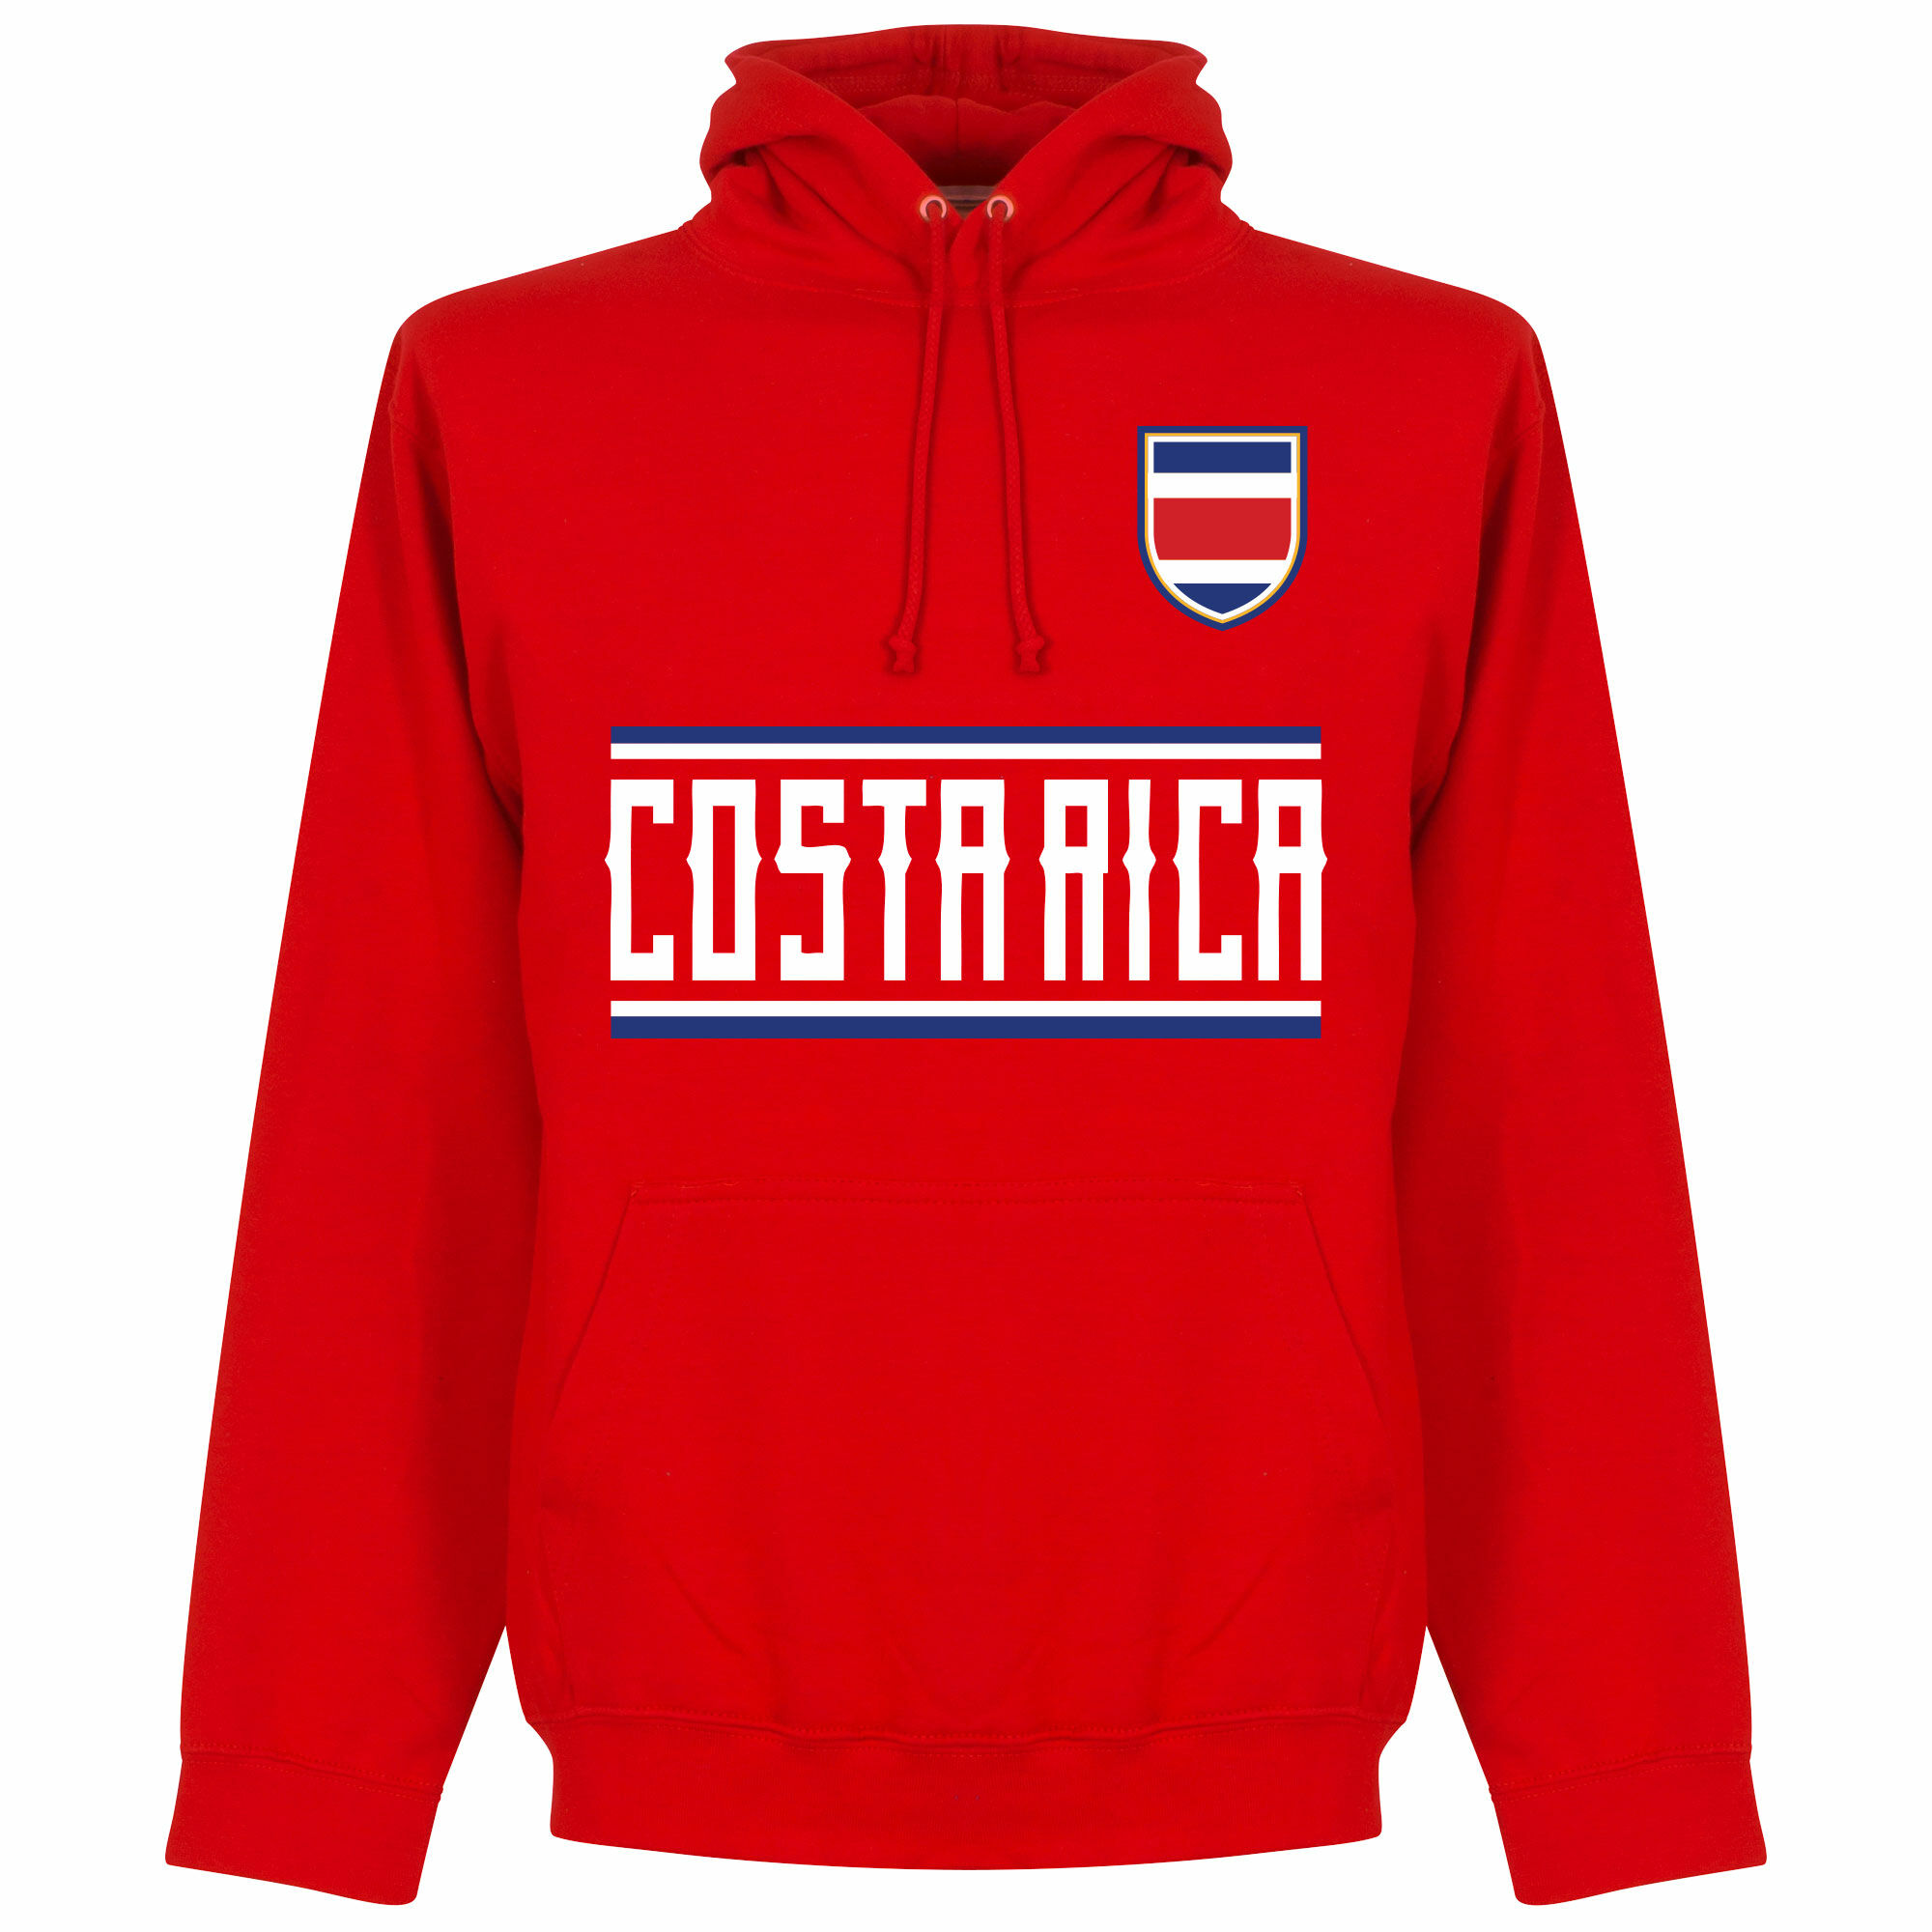 Kostarika - Mikina s kapucí - červená